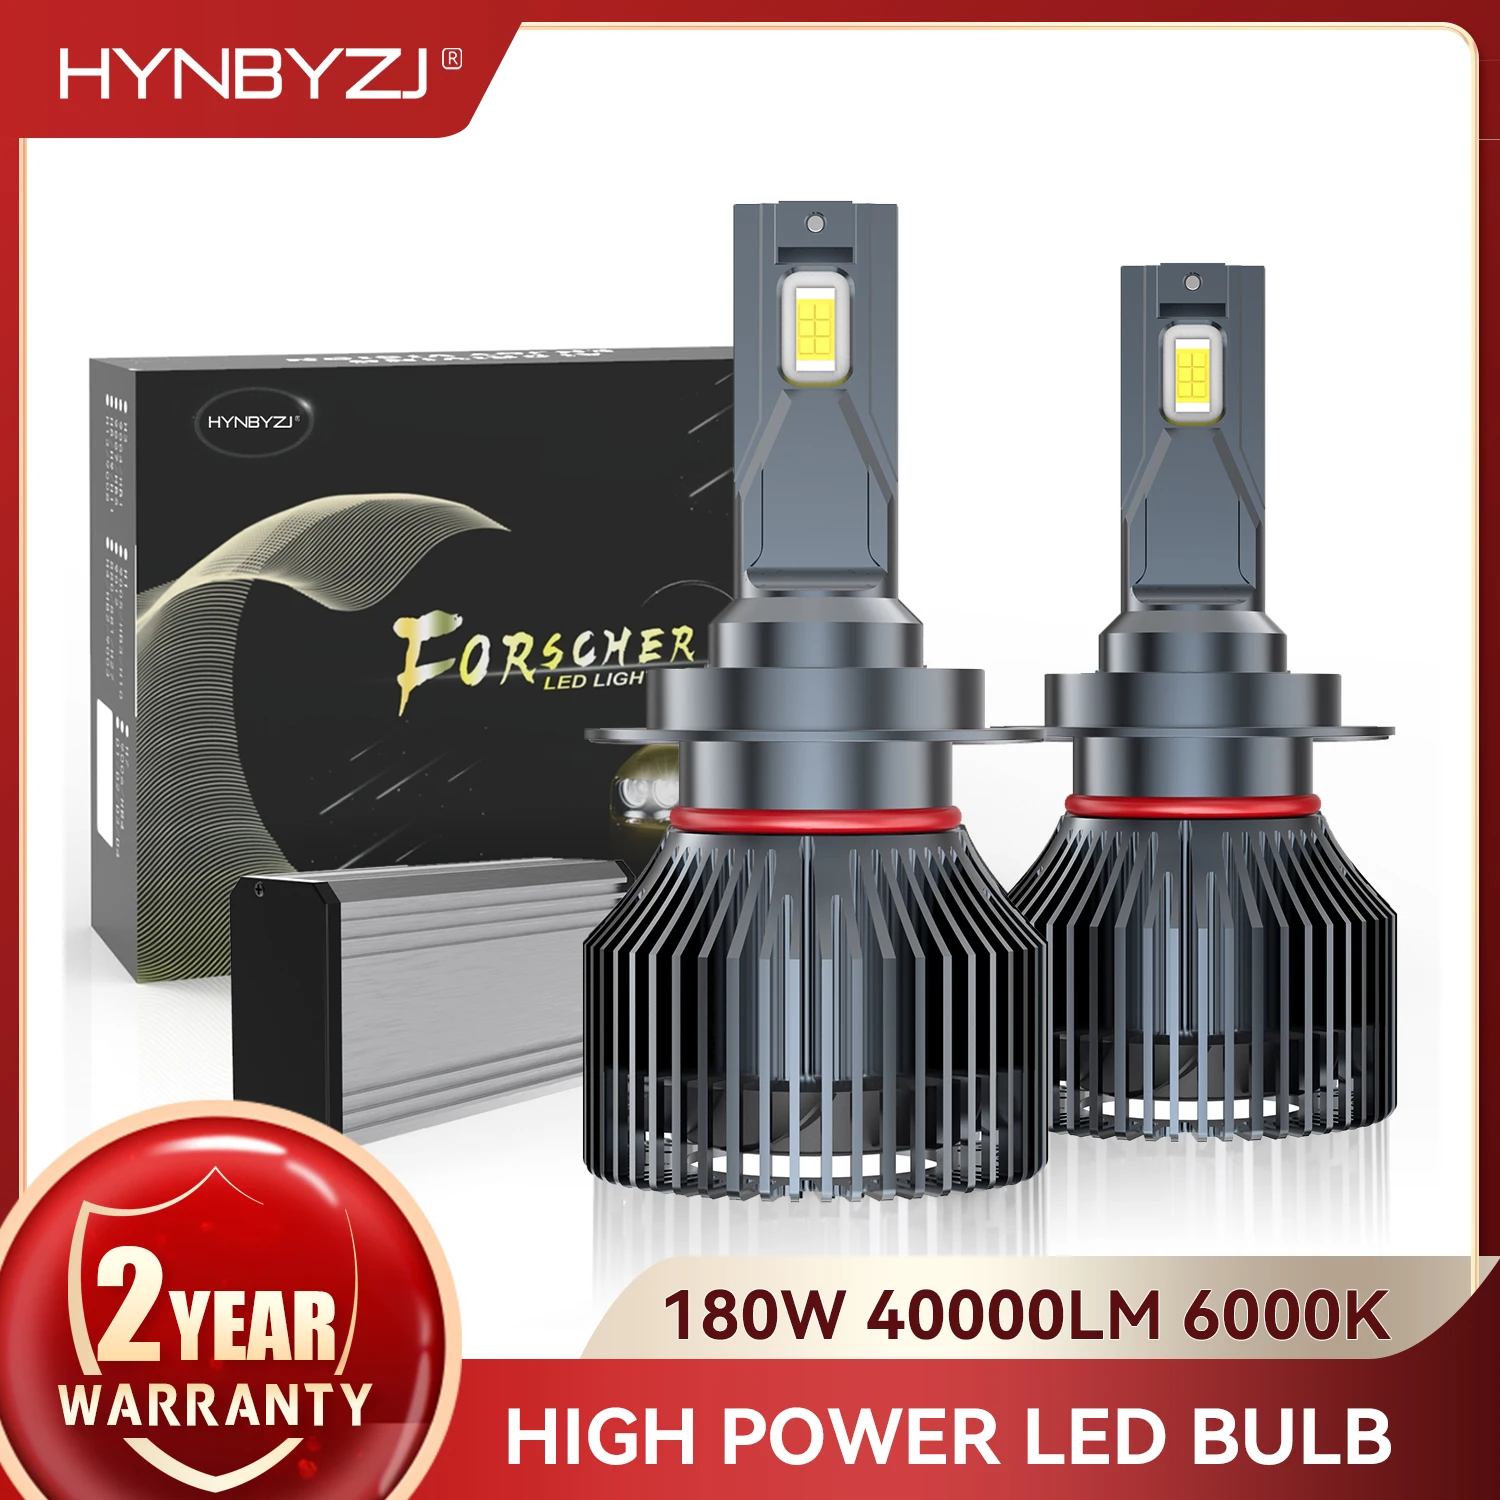 

HYNBYZJ 2PCS H1 H7 LED Canbus H4 H8 H11 40000LM 9005 HB3 9006 HB4 LED Bulb 9004 9007 H13 Car Headlight Bulb Auto Fog Lamp 6000K